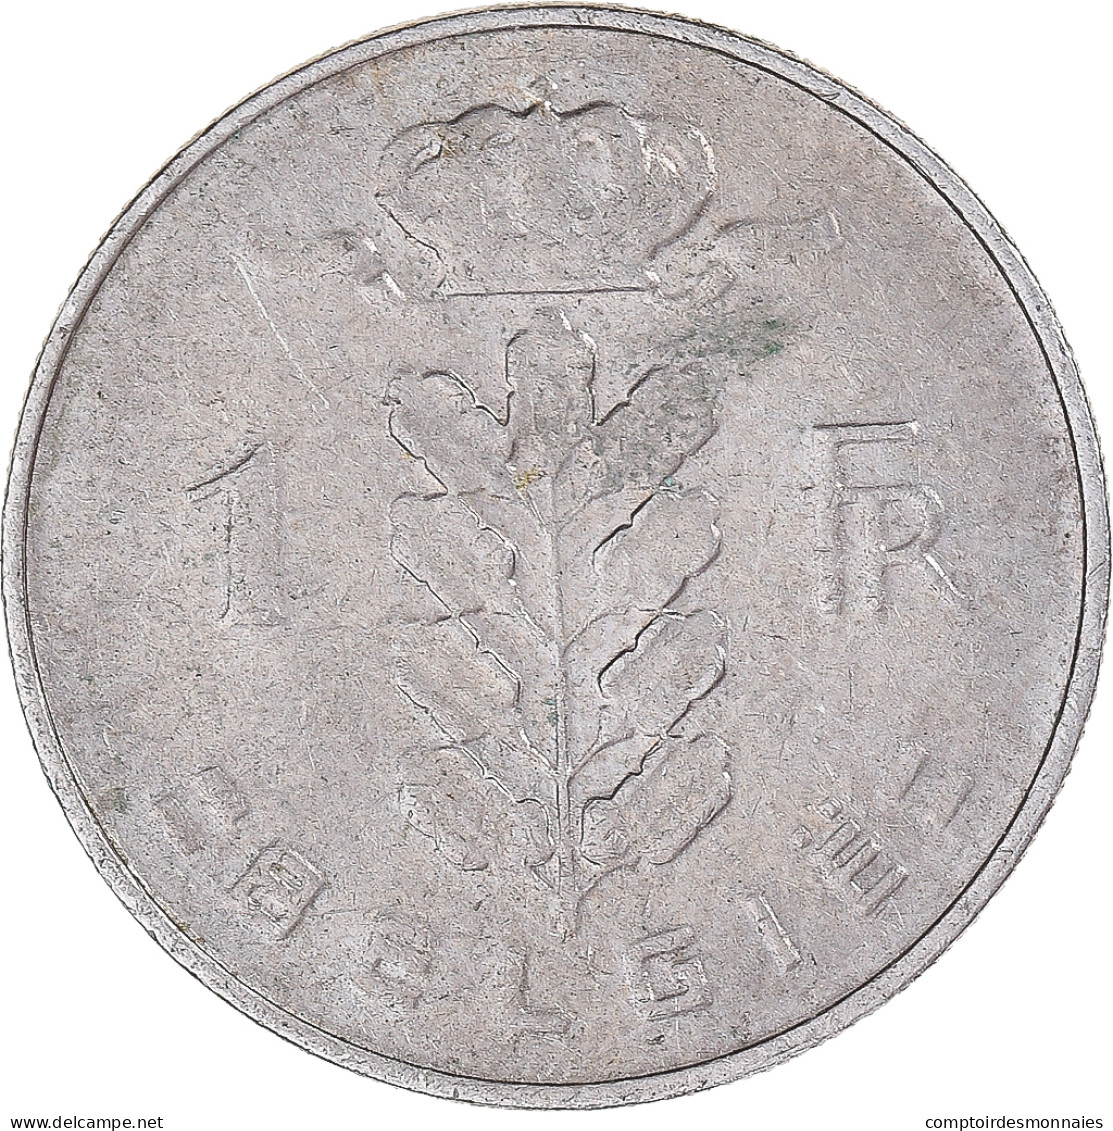 Monnaie, Belgique, Franc, 1969 - 10 Frank